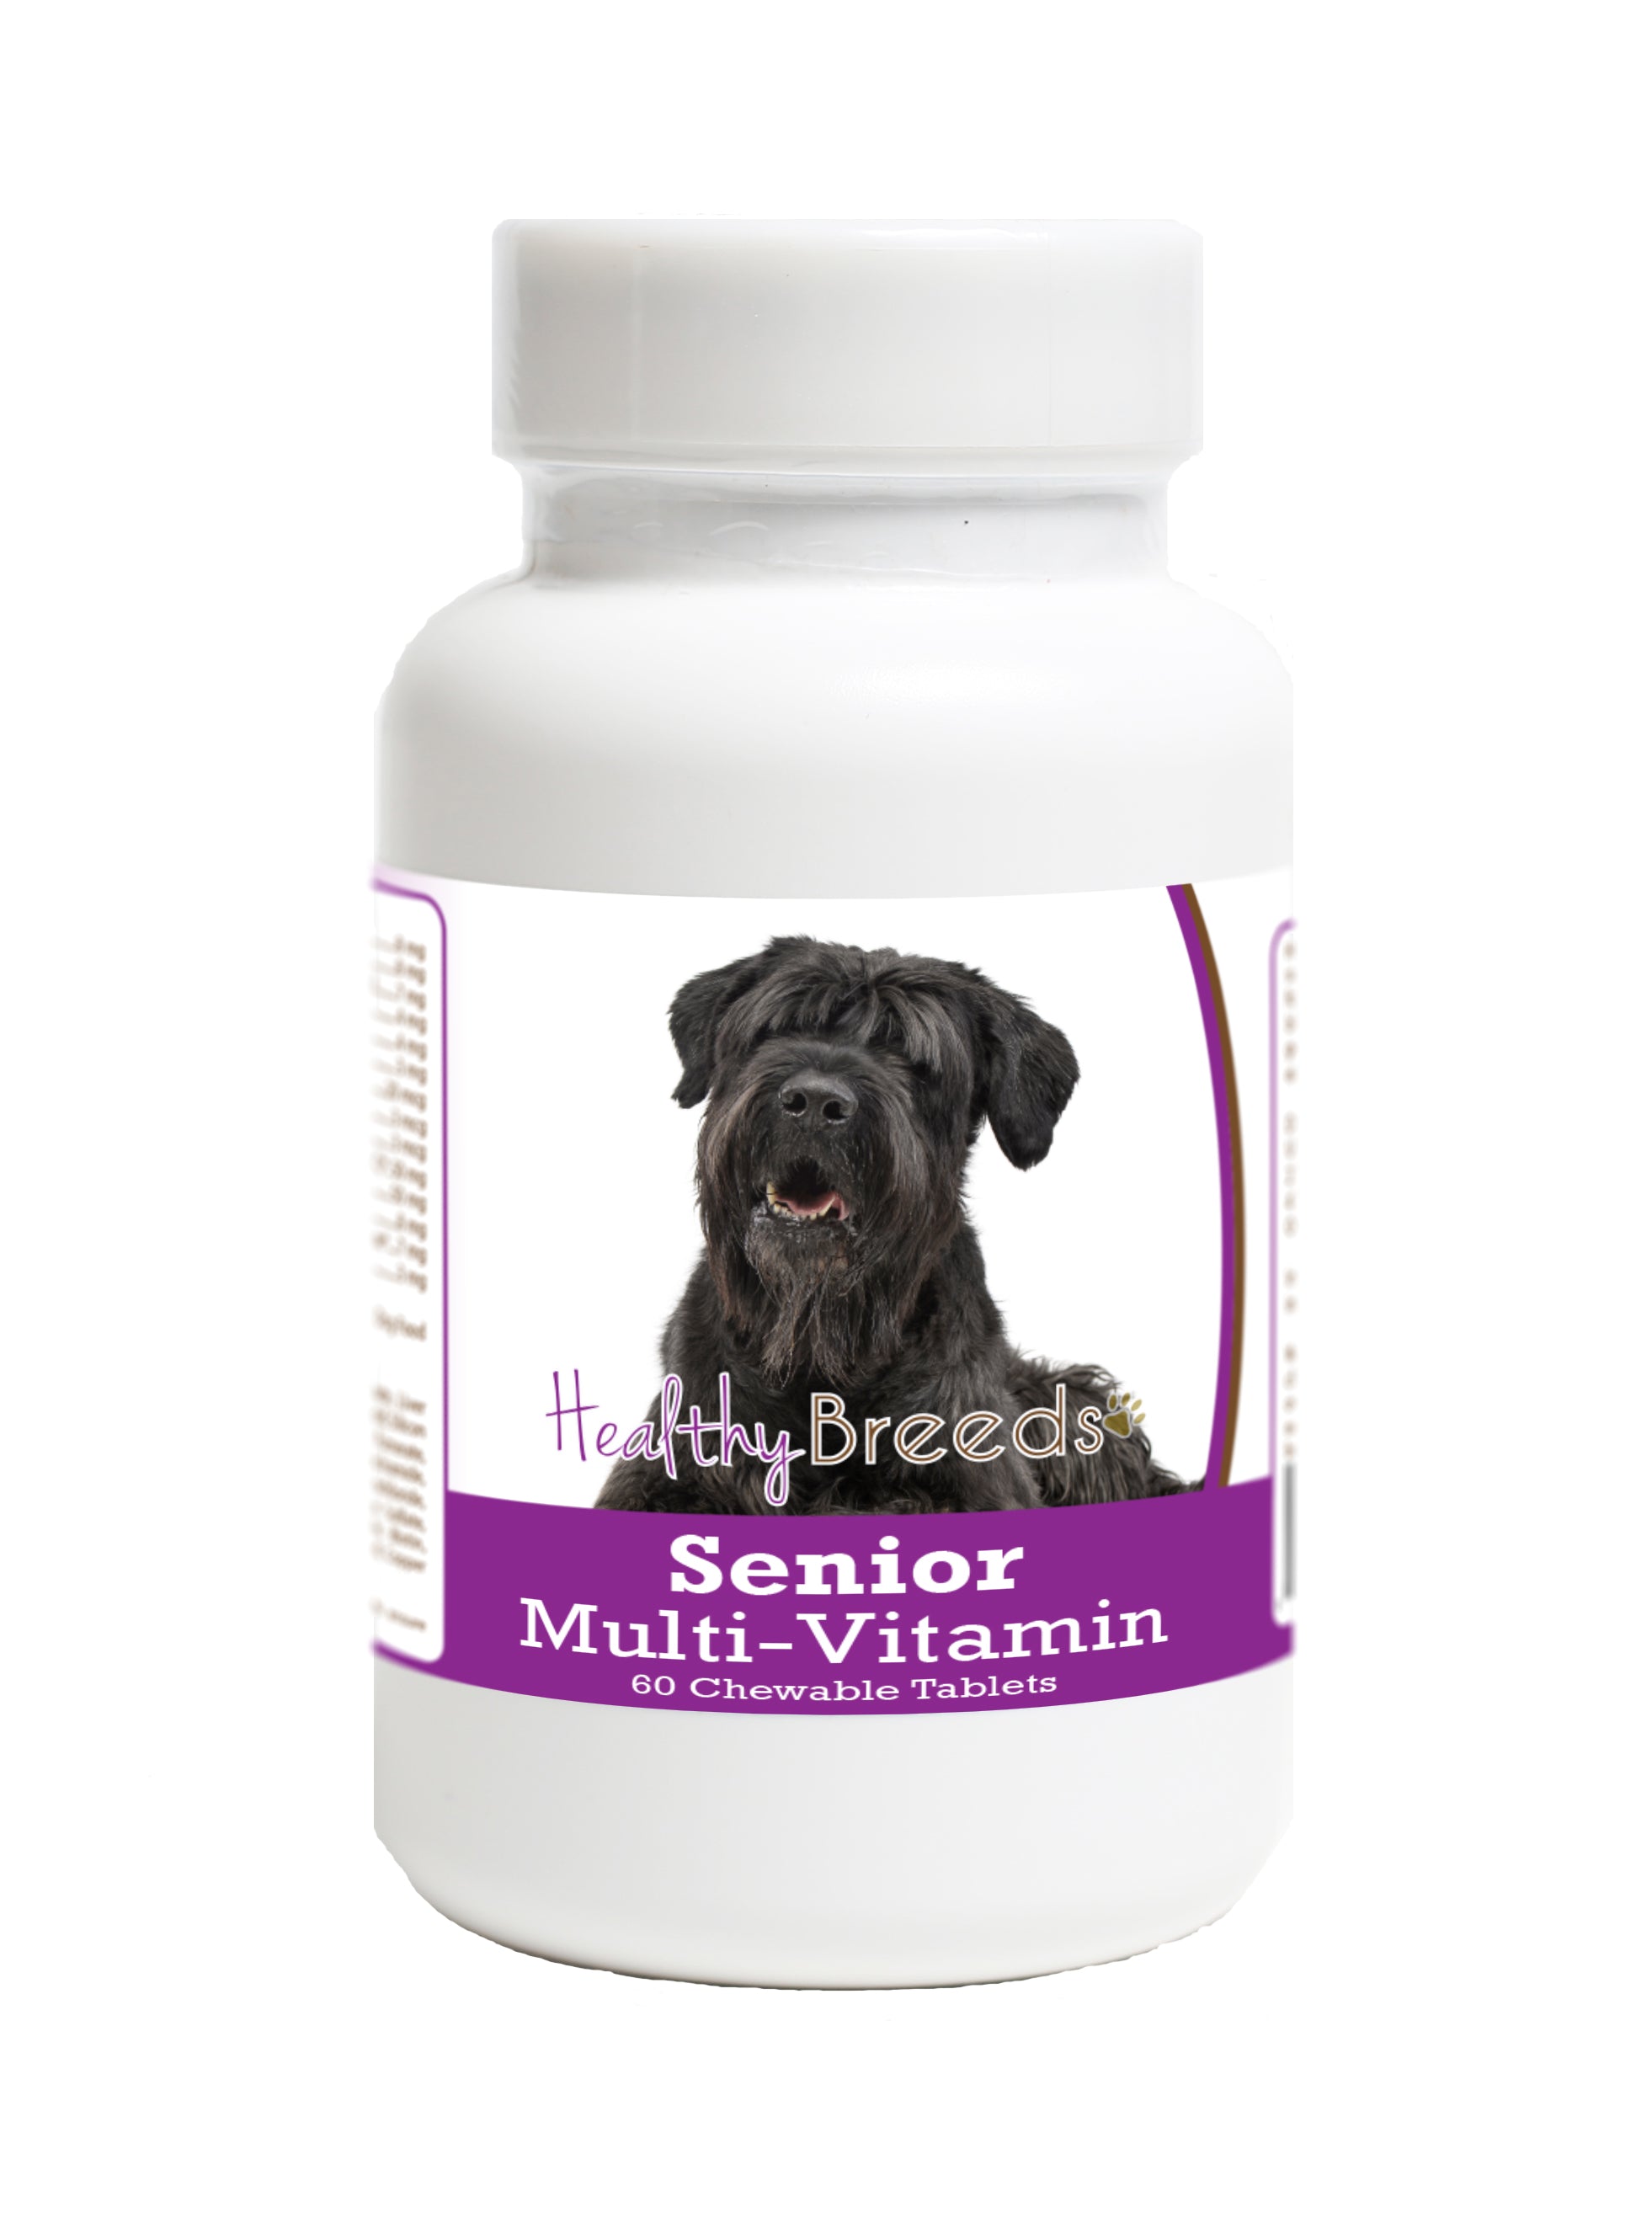 Black Russian Terrier Senior Dog Multivitamin Tablets 60 Count